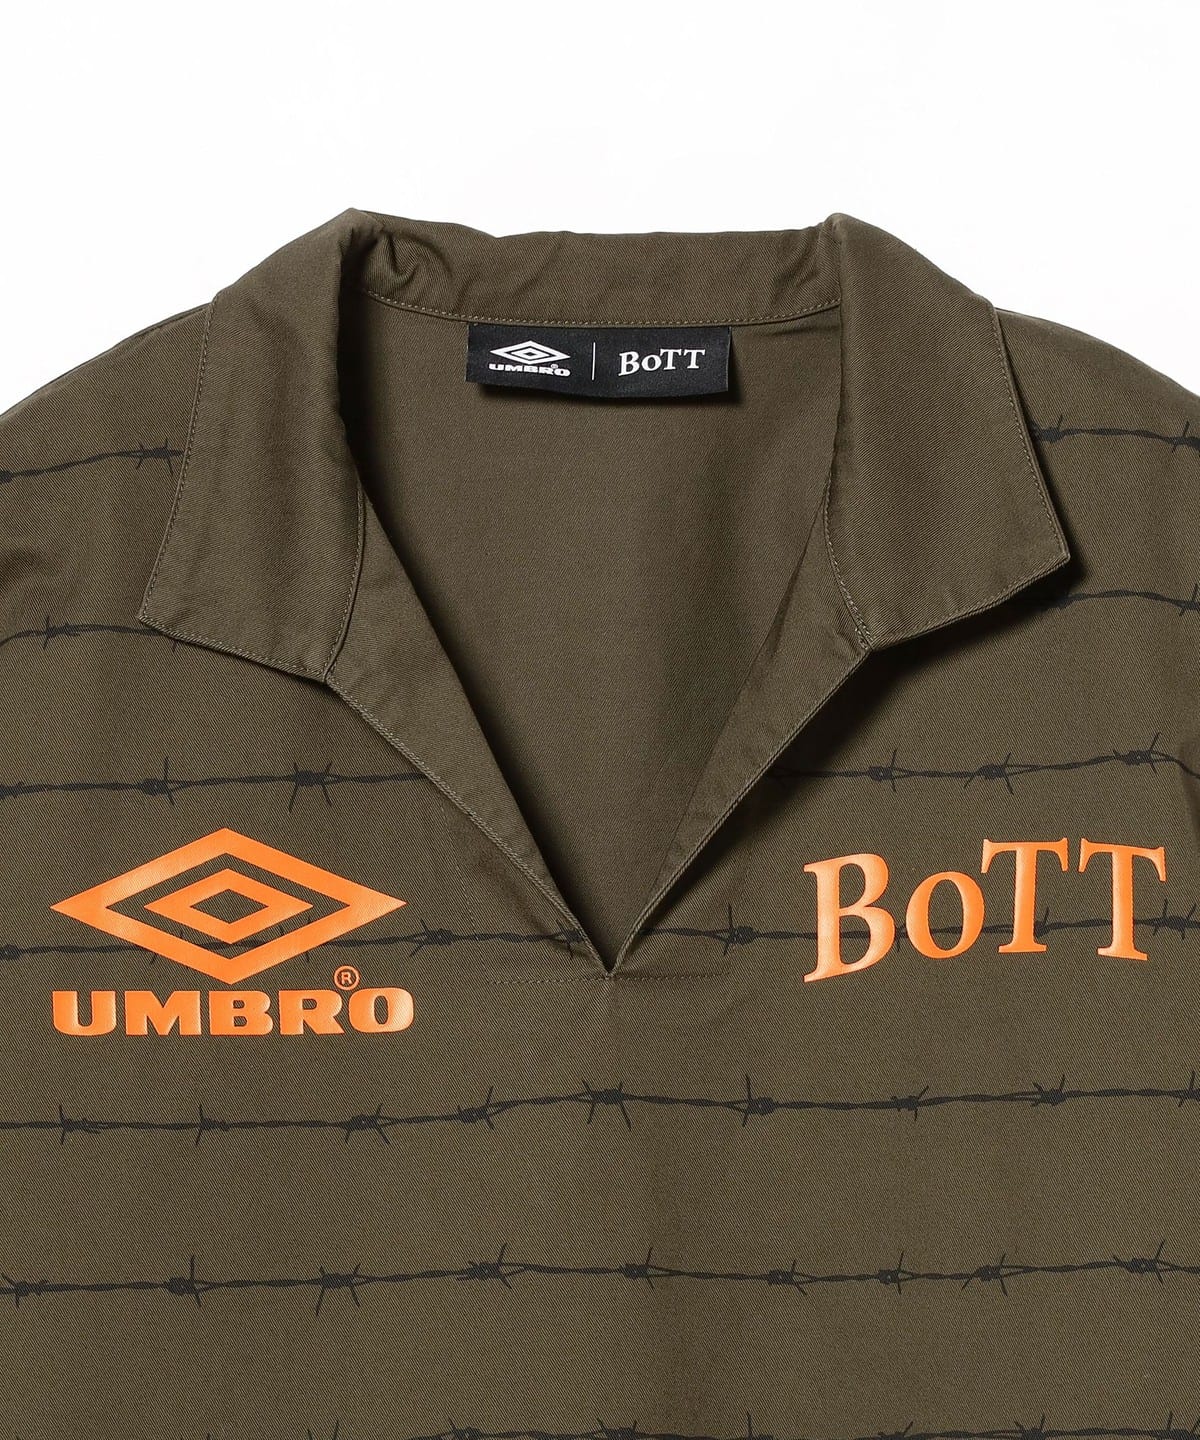 オンラインで購入致しましたUMBRO  BoTT  BEAMST Pullover Shirt XLサイズ